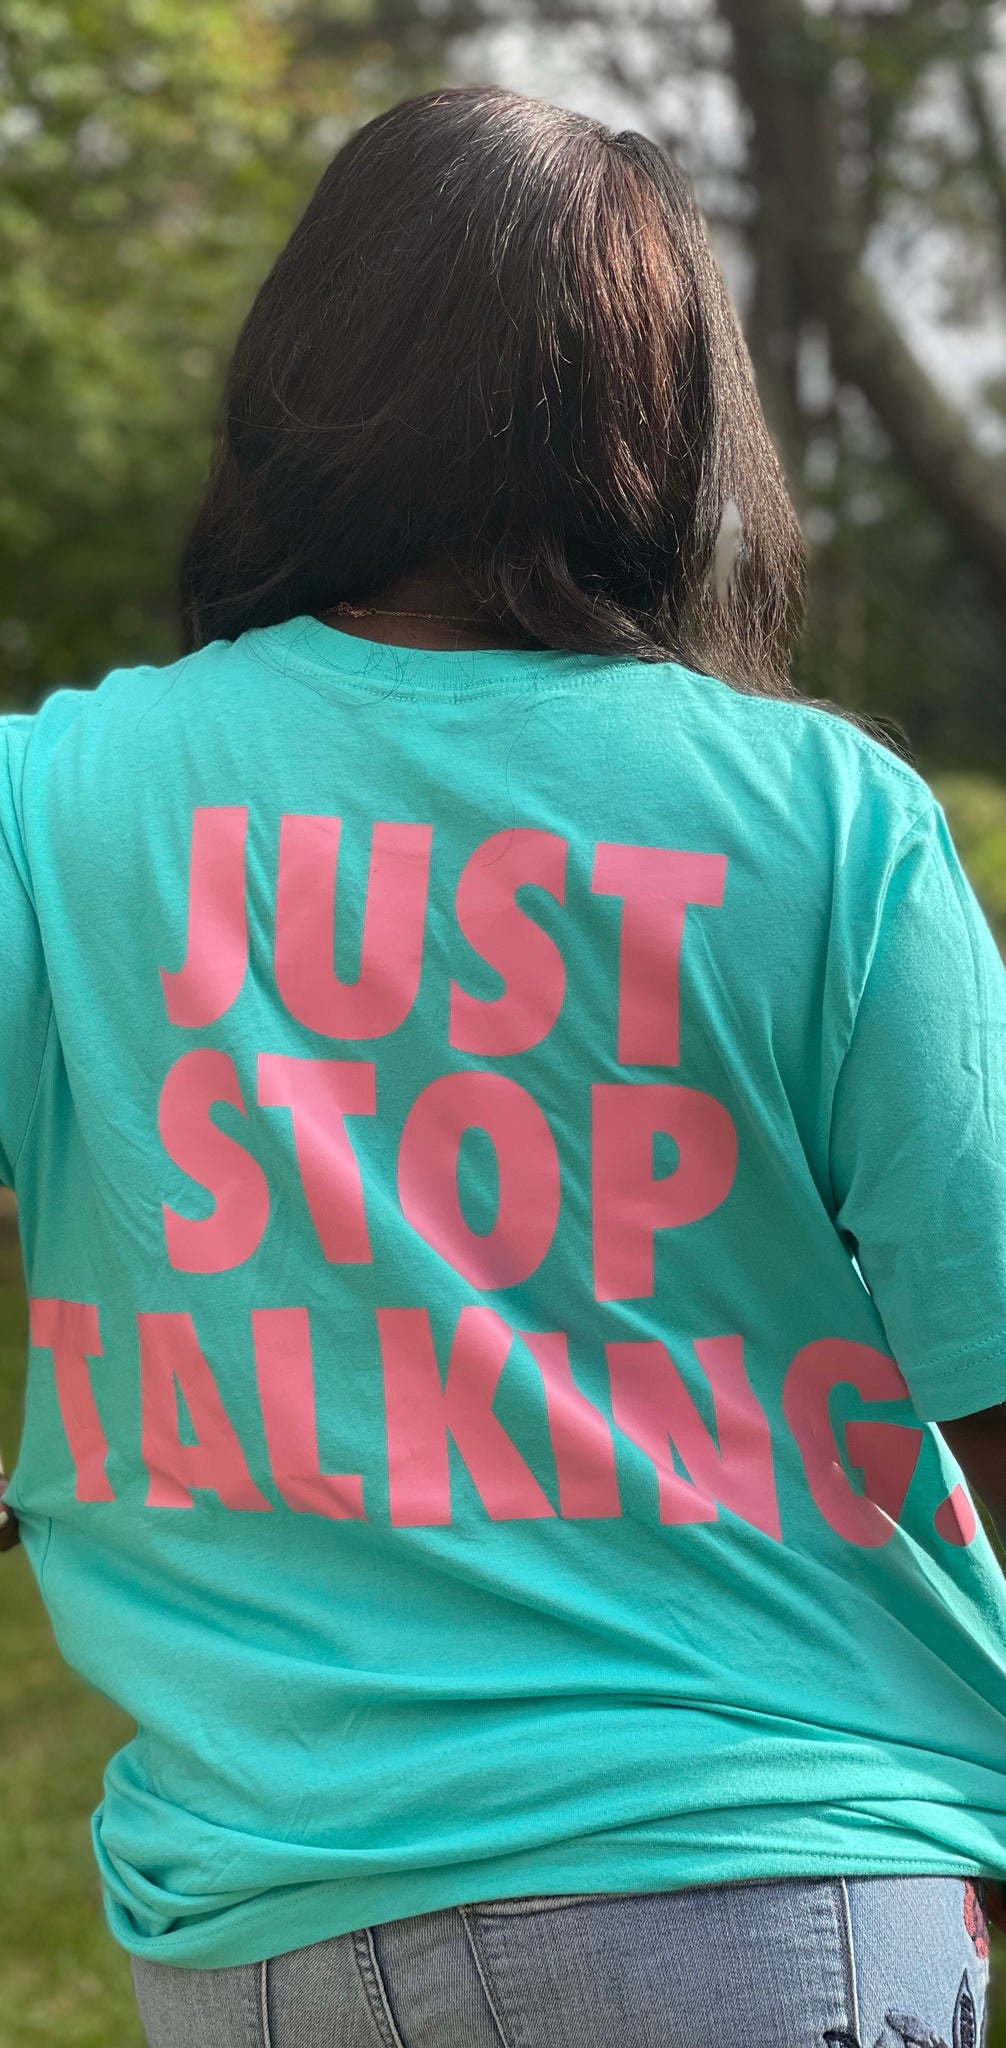 Just Stop Talking. - Unisex Tee